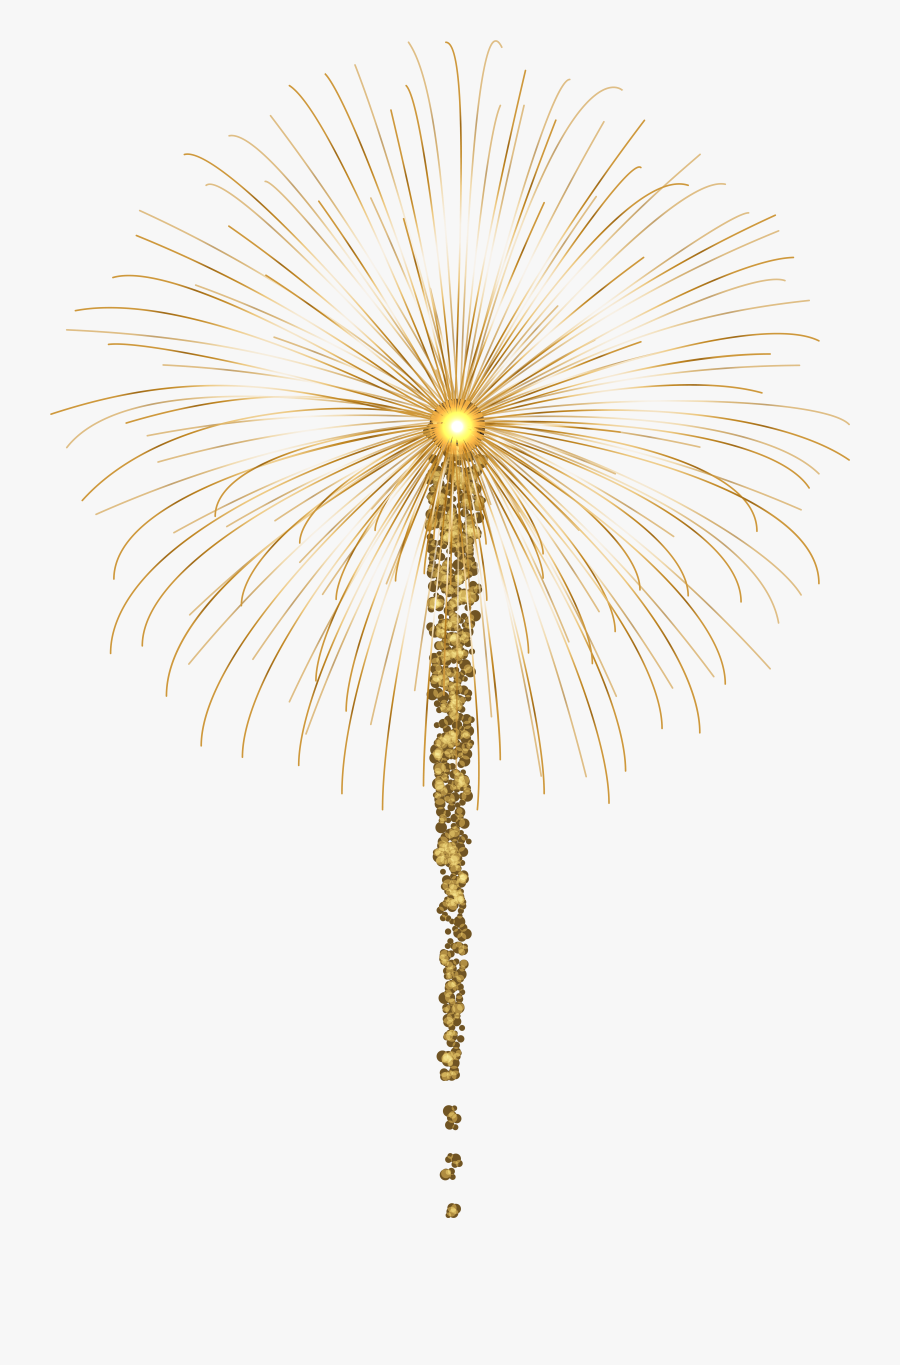 Gold Fireworks For Dark Images Png Clip Art, Transparent Clipart